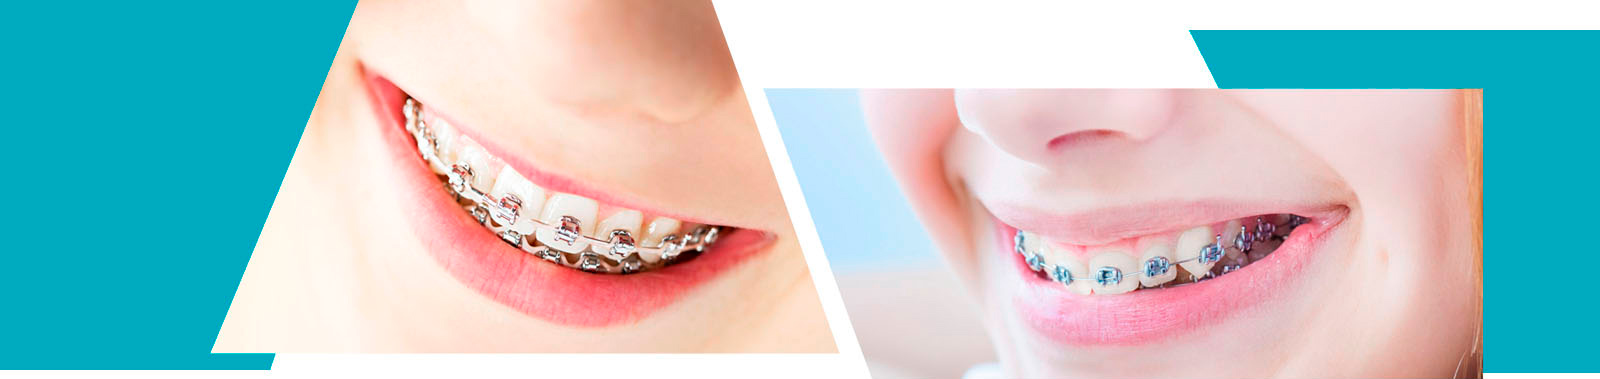 Ortodoncia Exclusiva Dra. María Jesús Díez García collage imagen 1